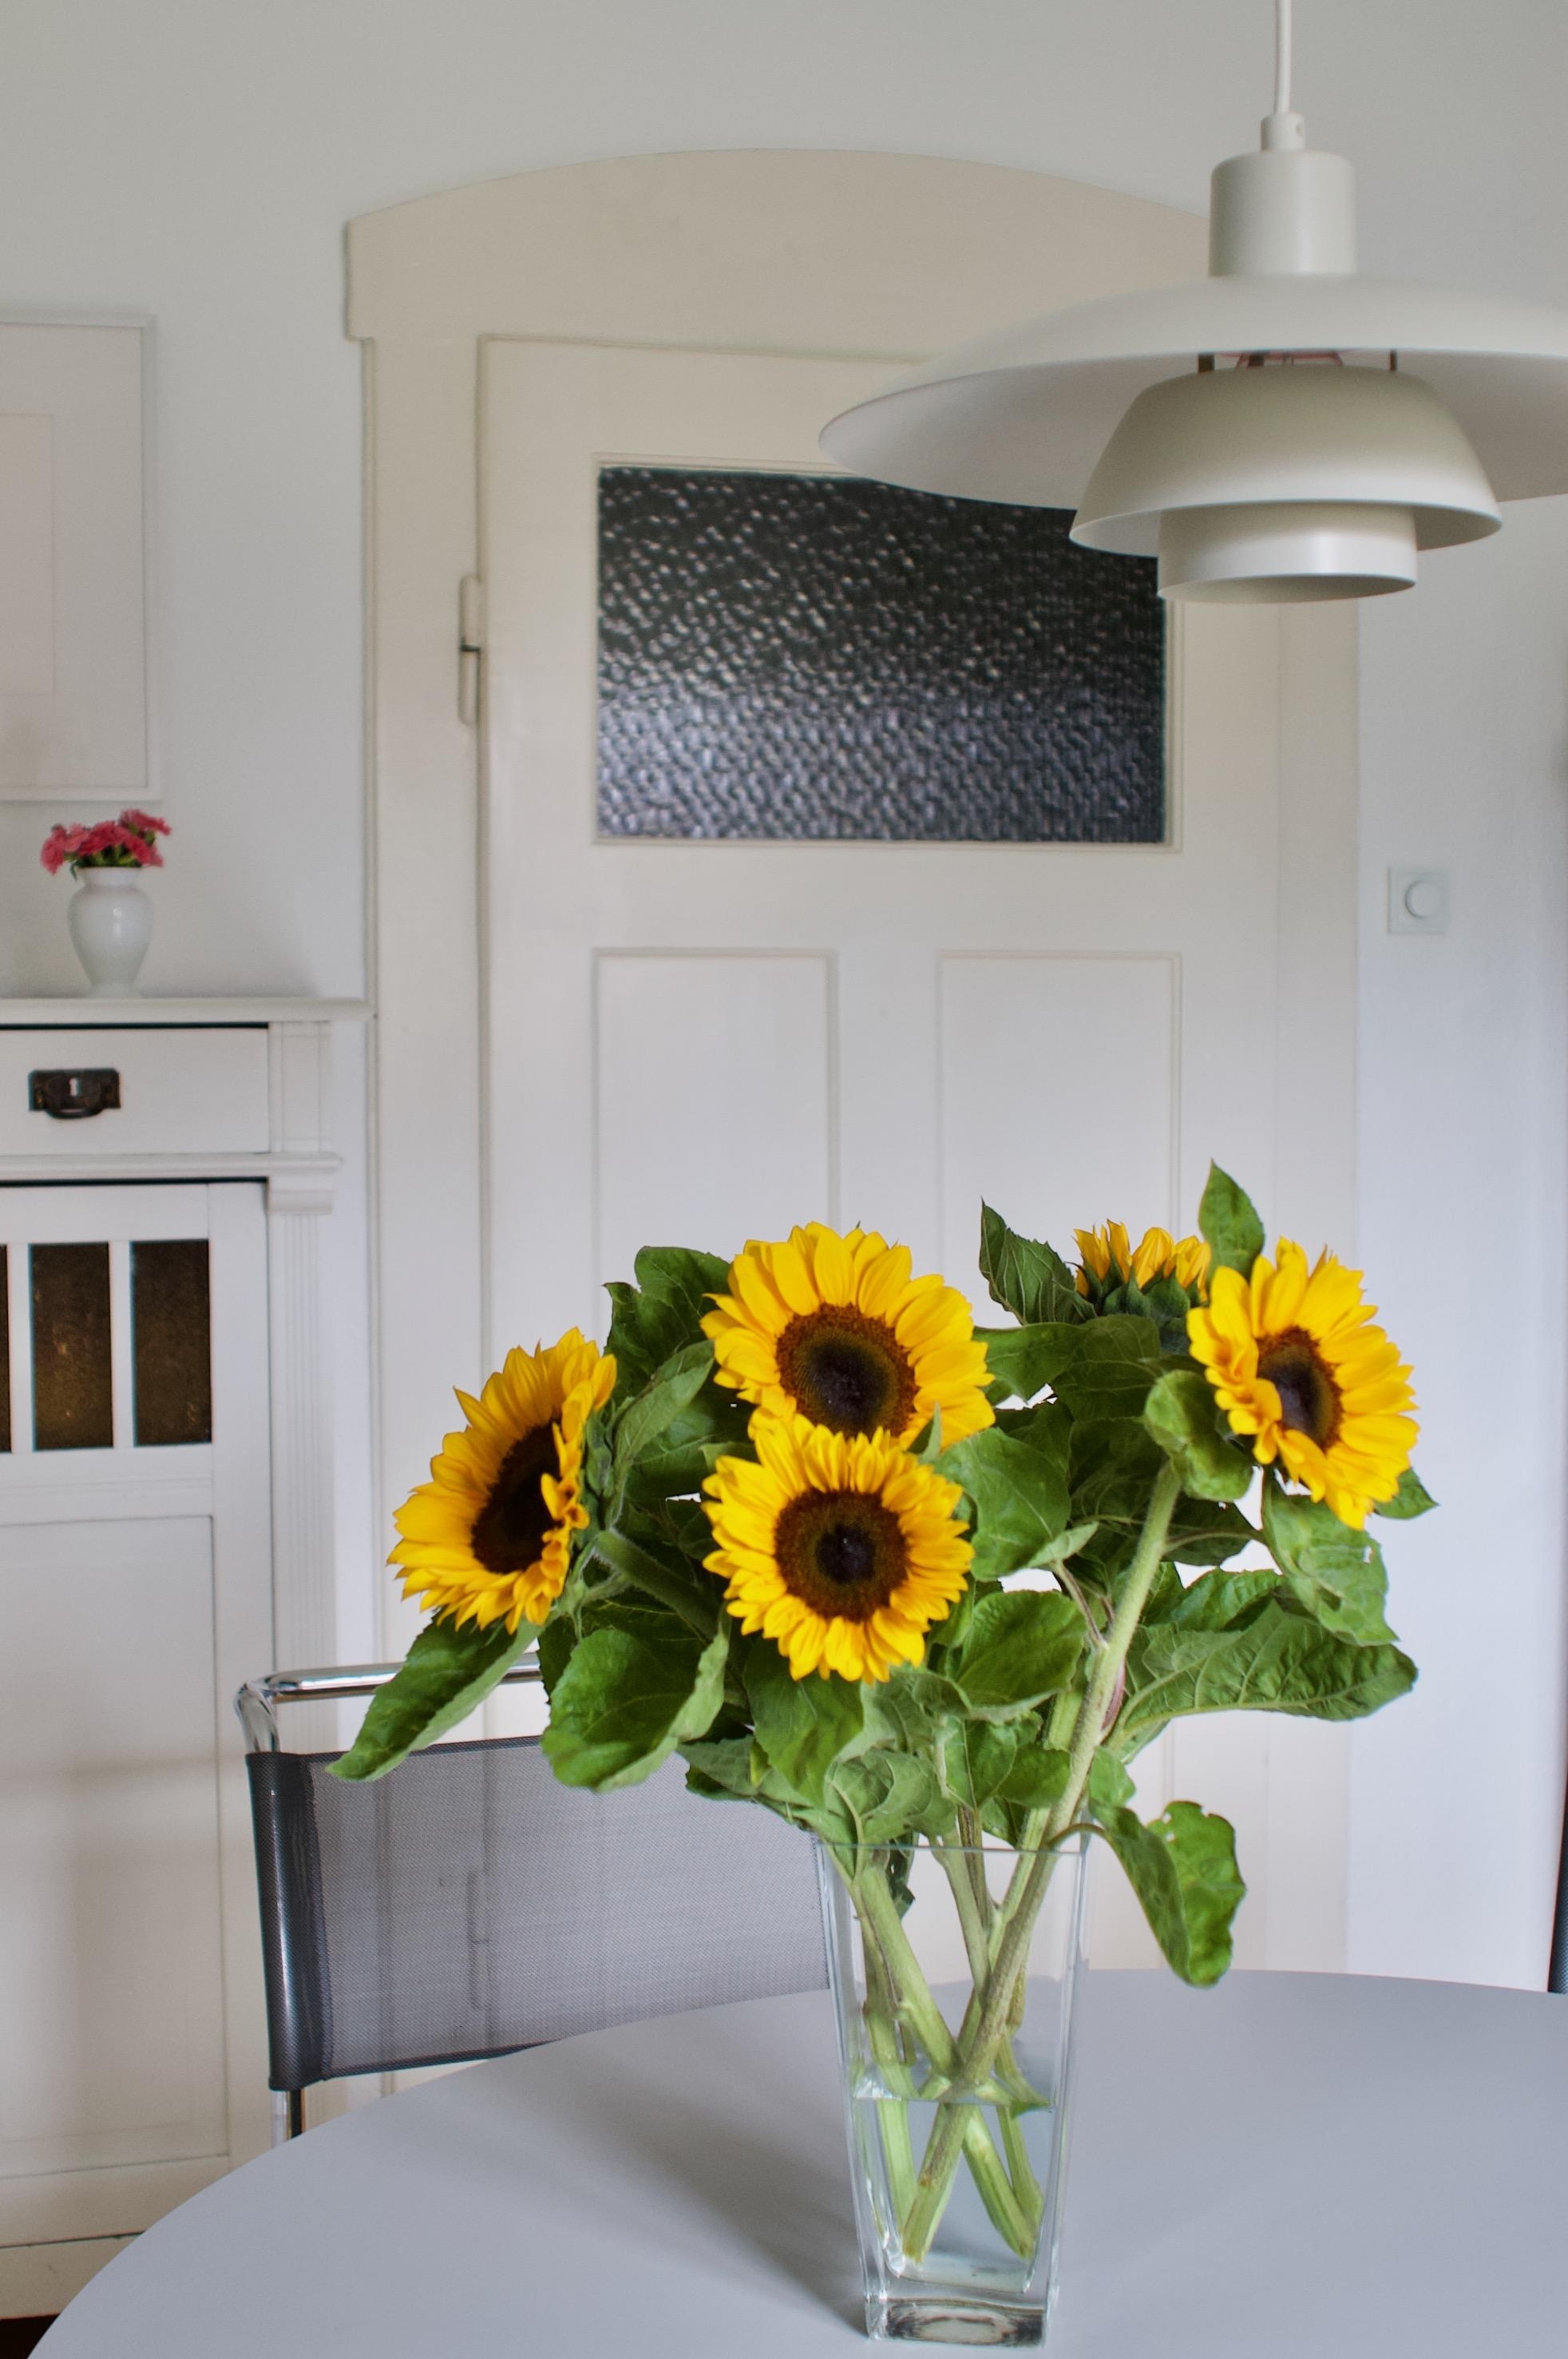 #freshflowerfriday in unserer Küche
Habt ein schönes Wochenende!